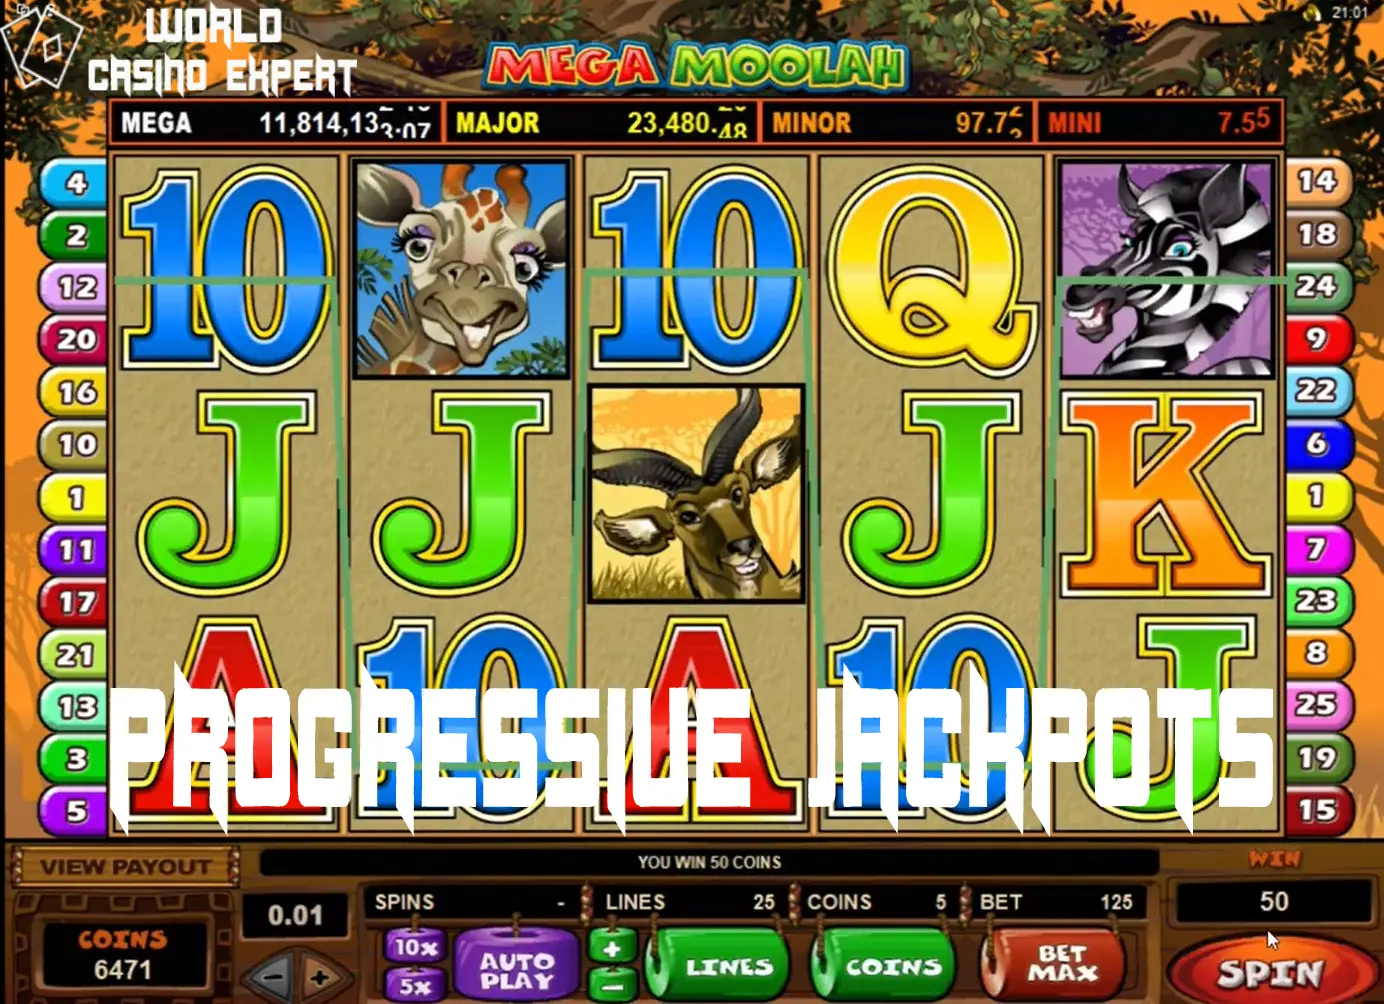 Progressive Jackpots als eine Möglichkeit, große Gewinne zu erzielen | World Casino Expert Deutschland